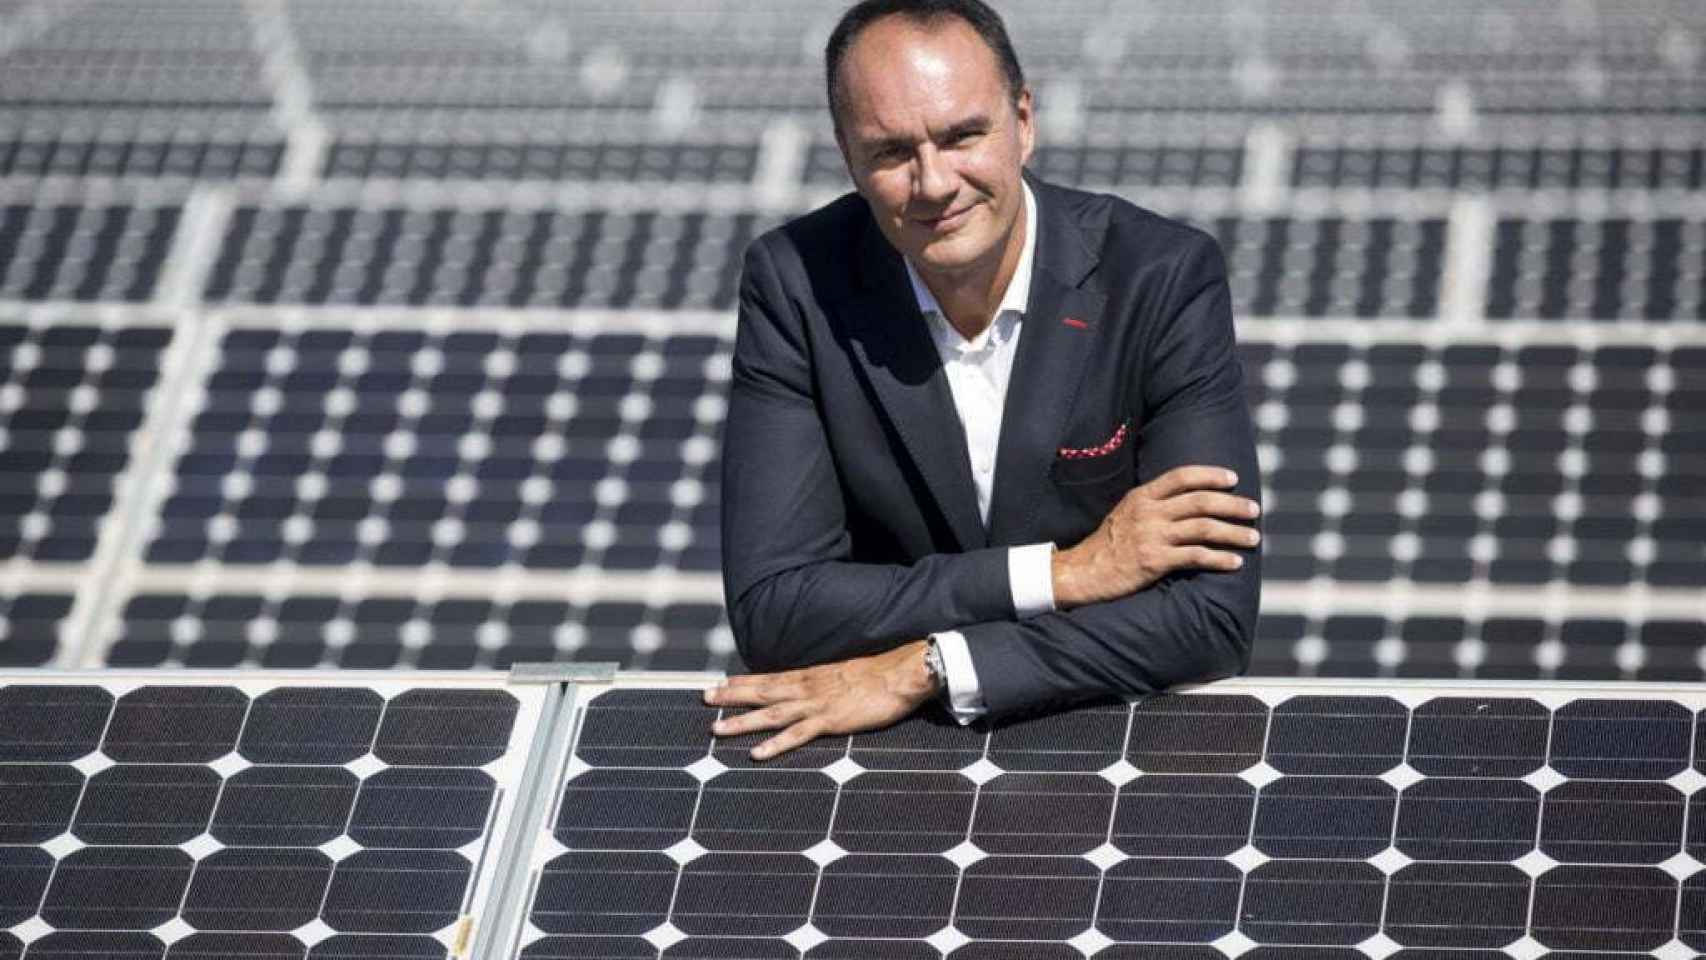 NRG obtiene la autorización para construir el mayor parque solar de Castellón, de 24 MW